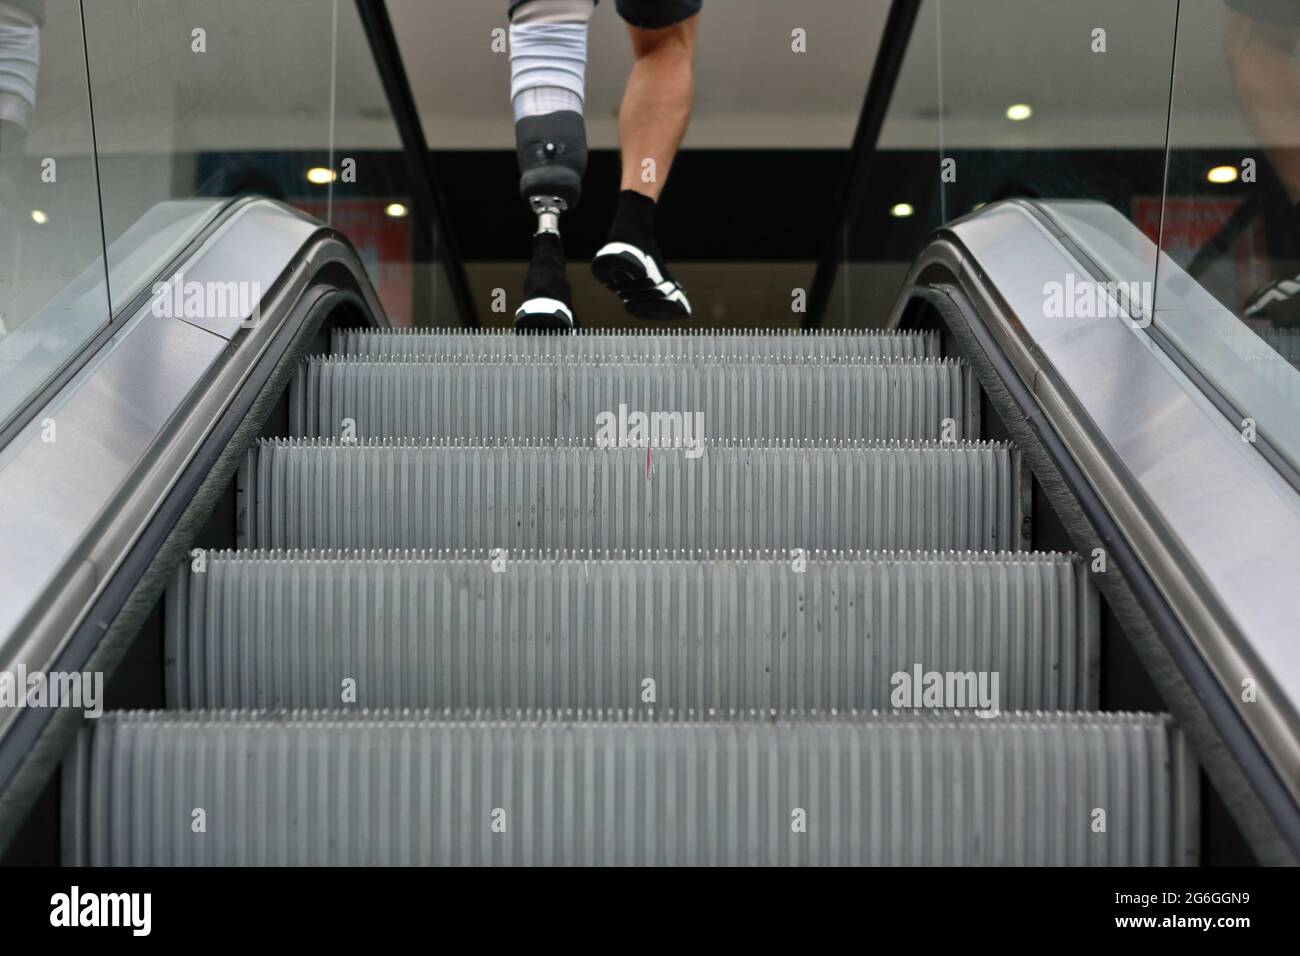 Londres (Royaume-Uni), 6 juillet 2021 : un homme avec une jambe prothétique nie un escalator dans le centre commercial de Londres. Banque D'Images